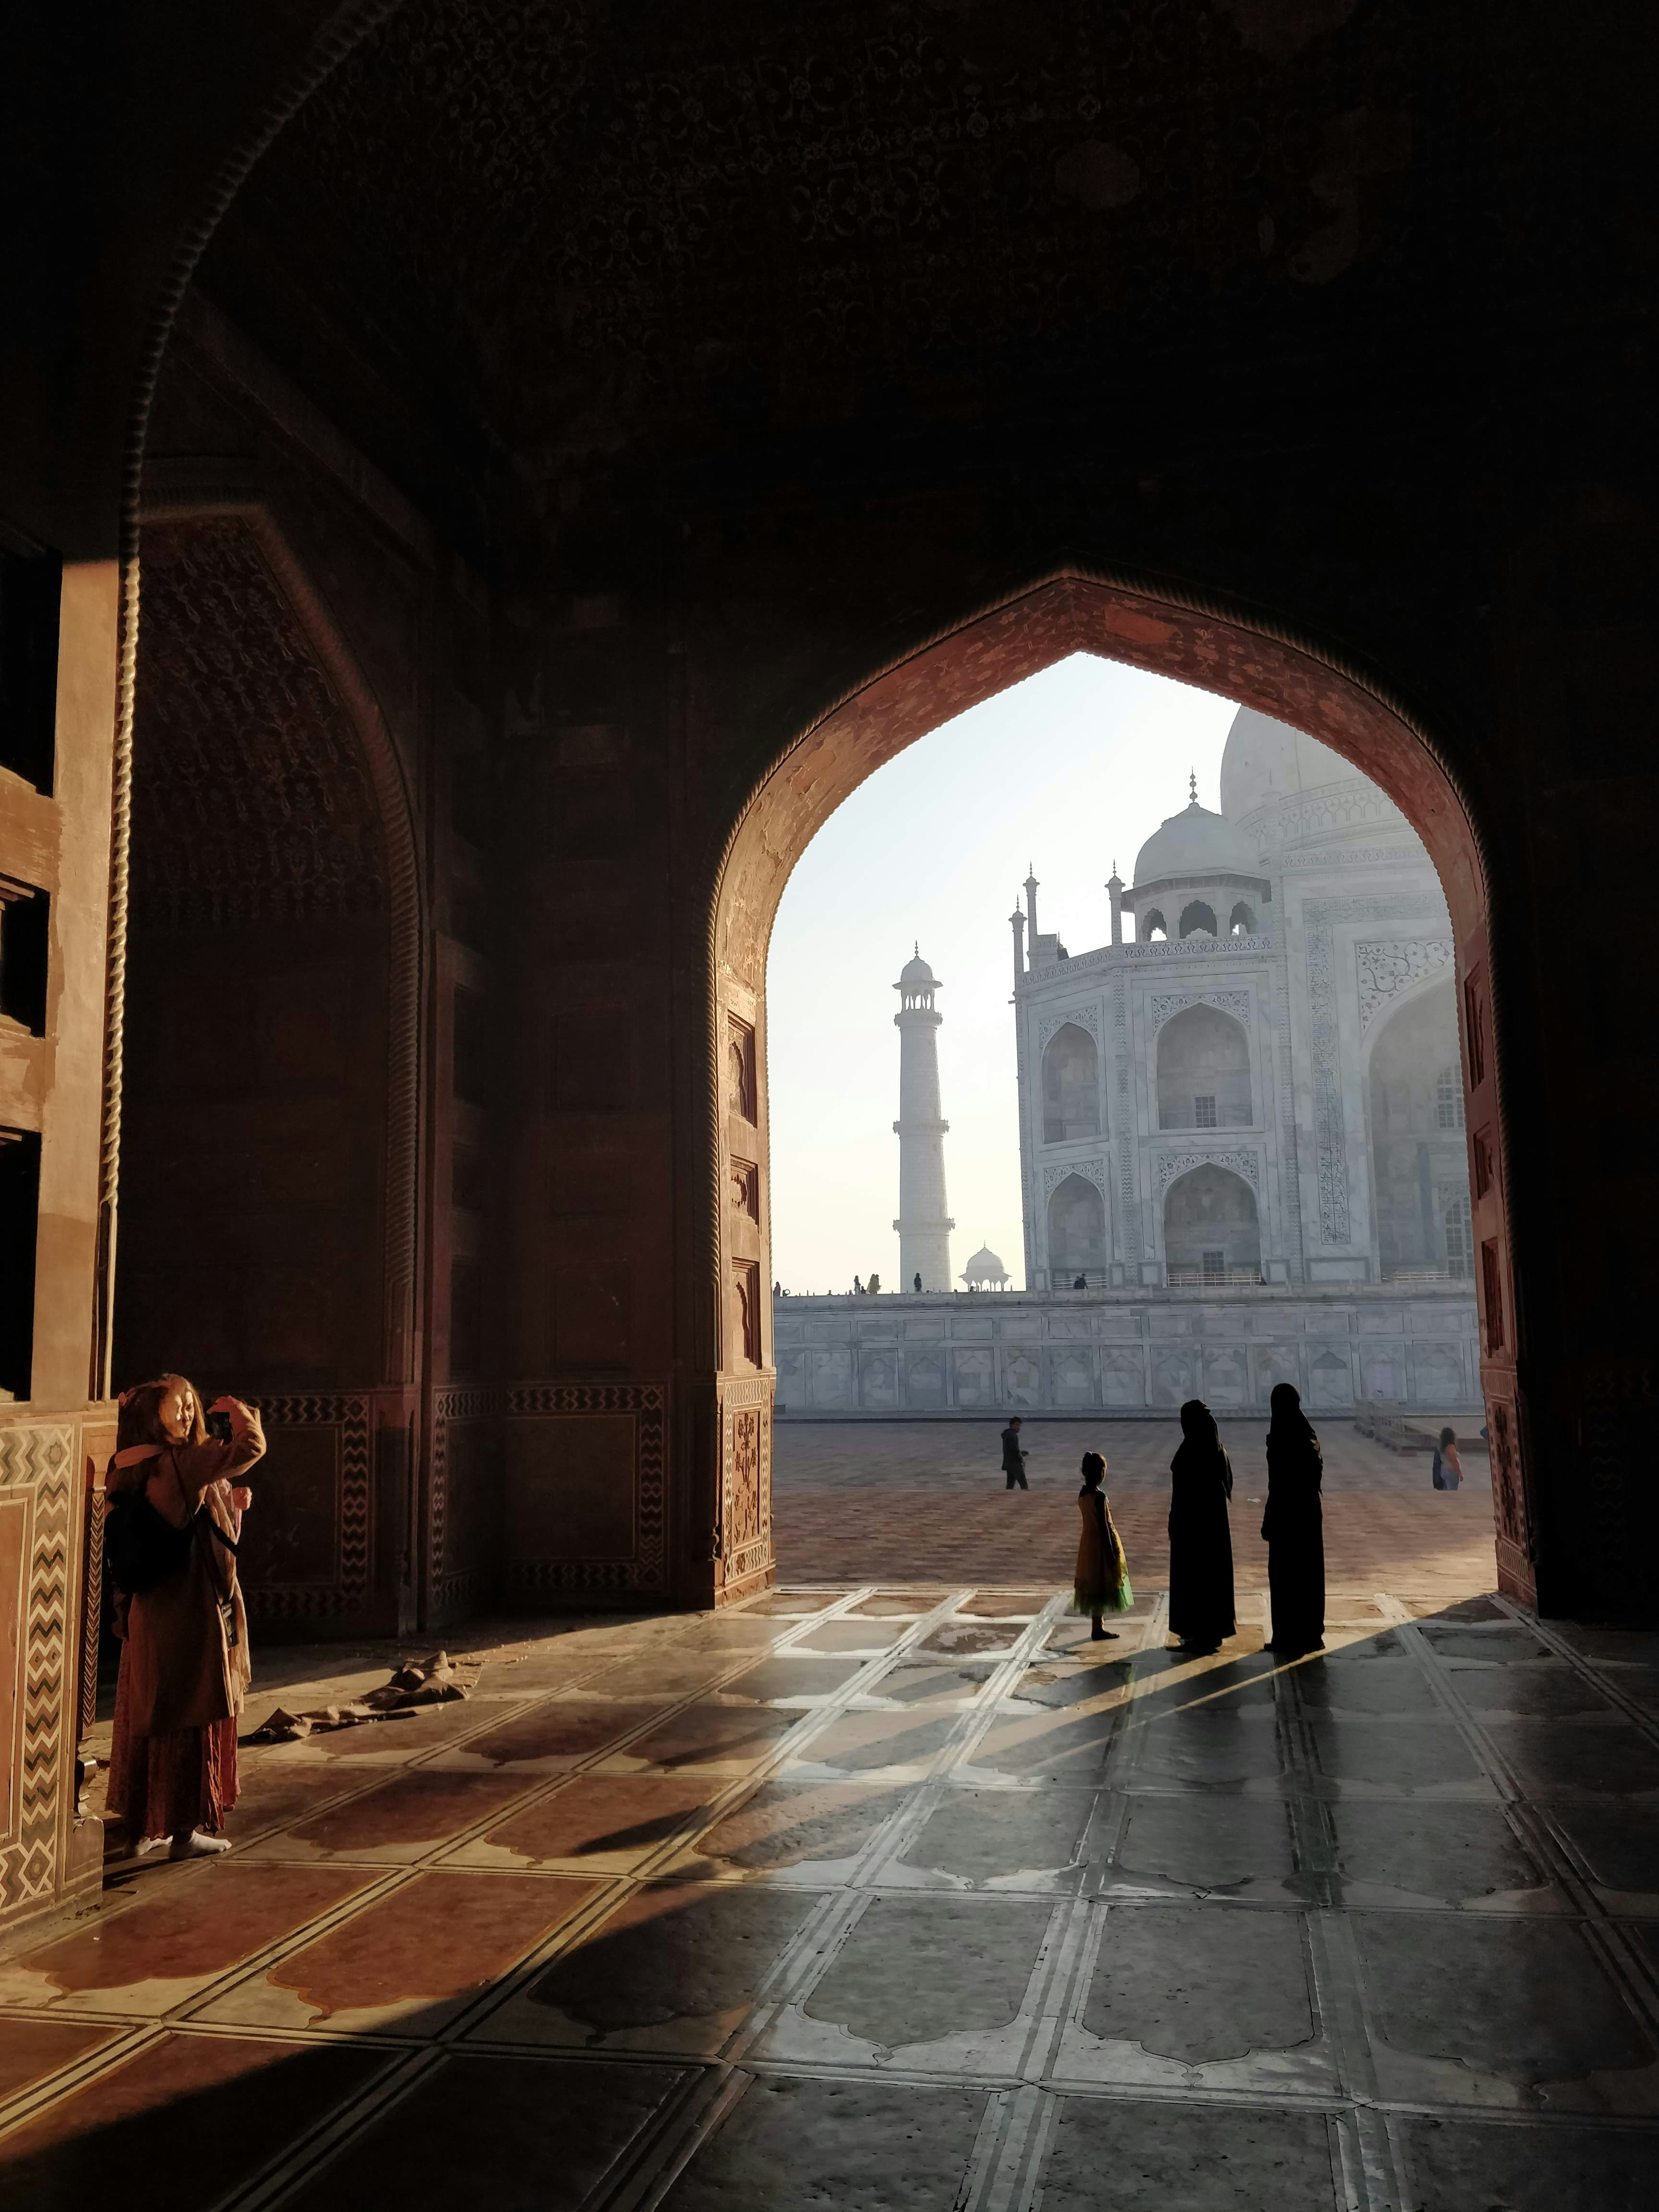 Taj Mahal taken at Jaipur, India